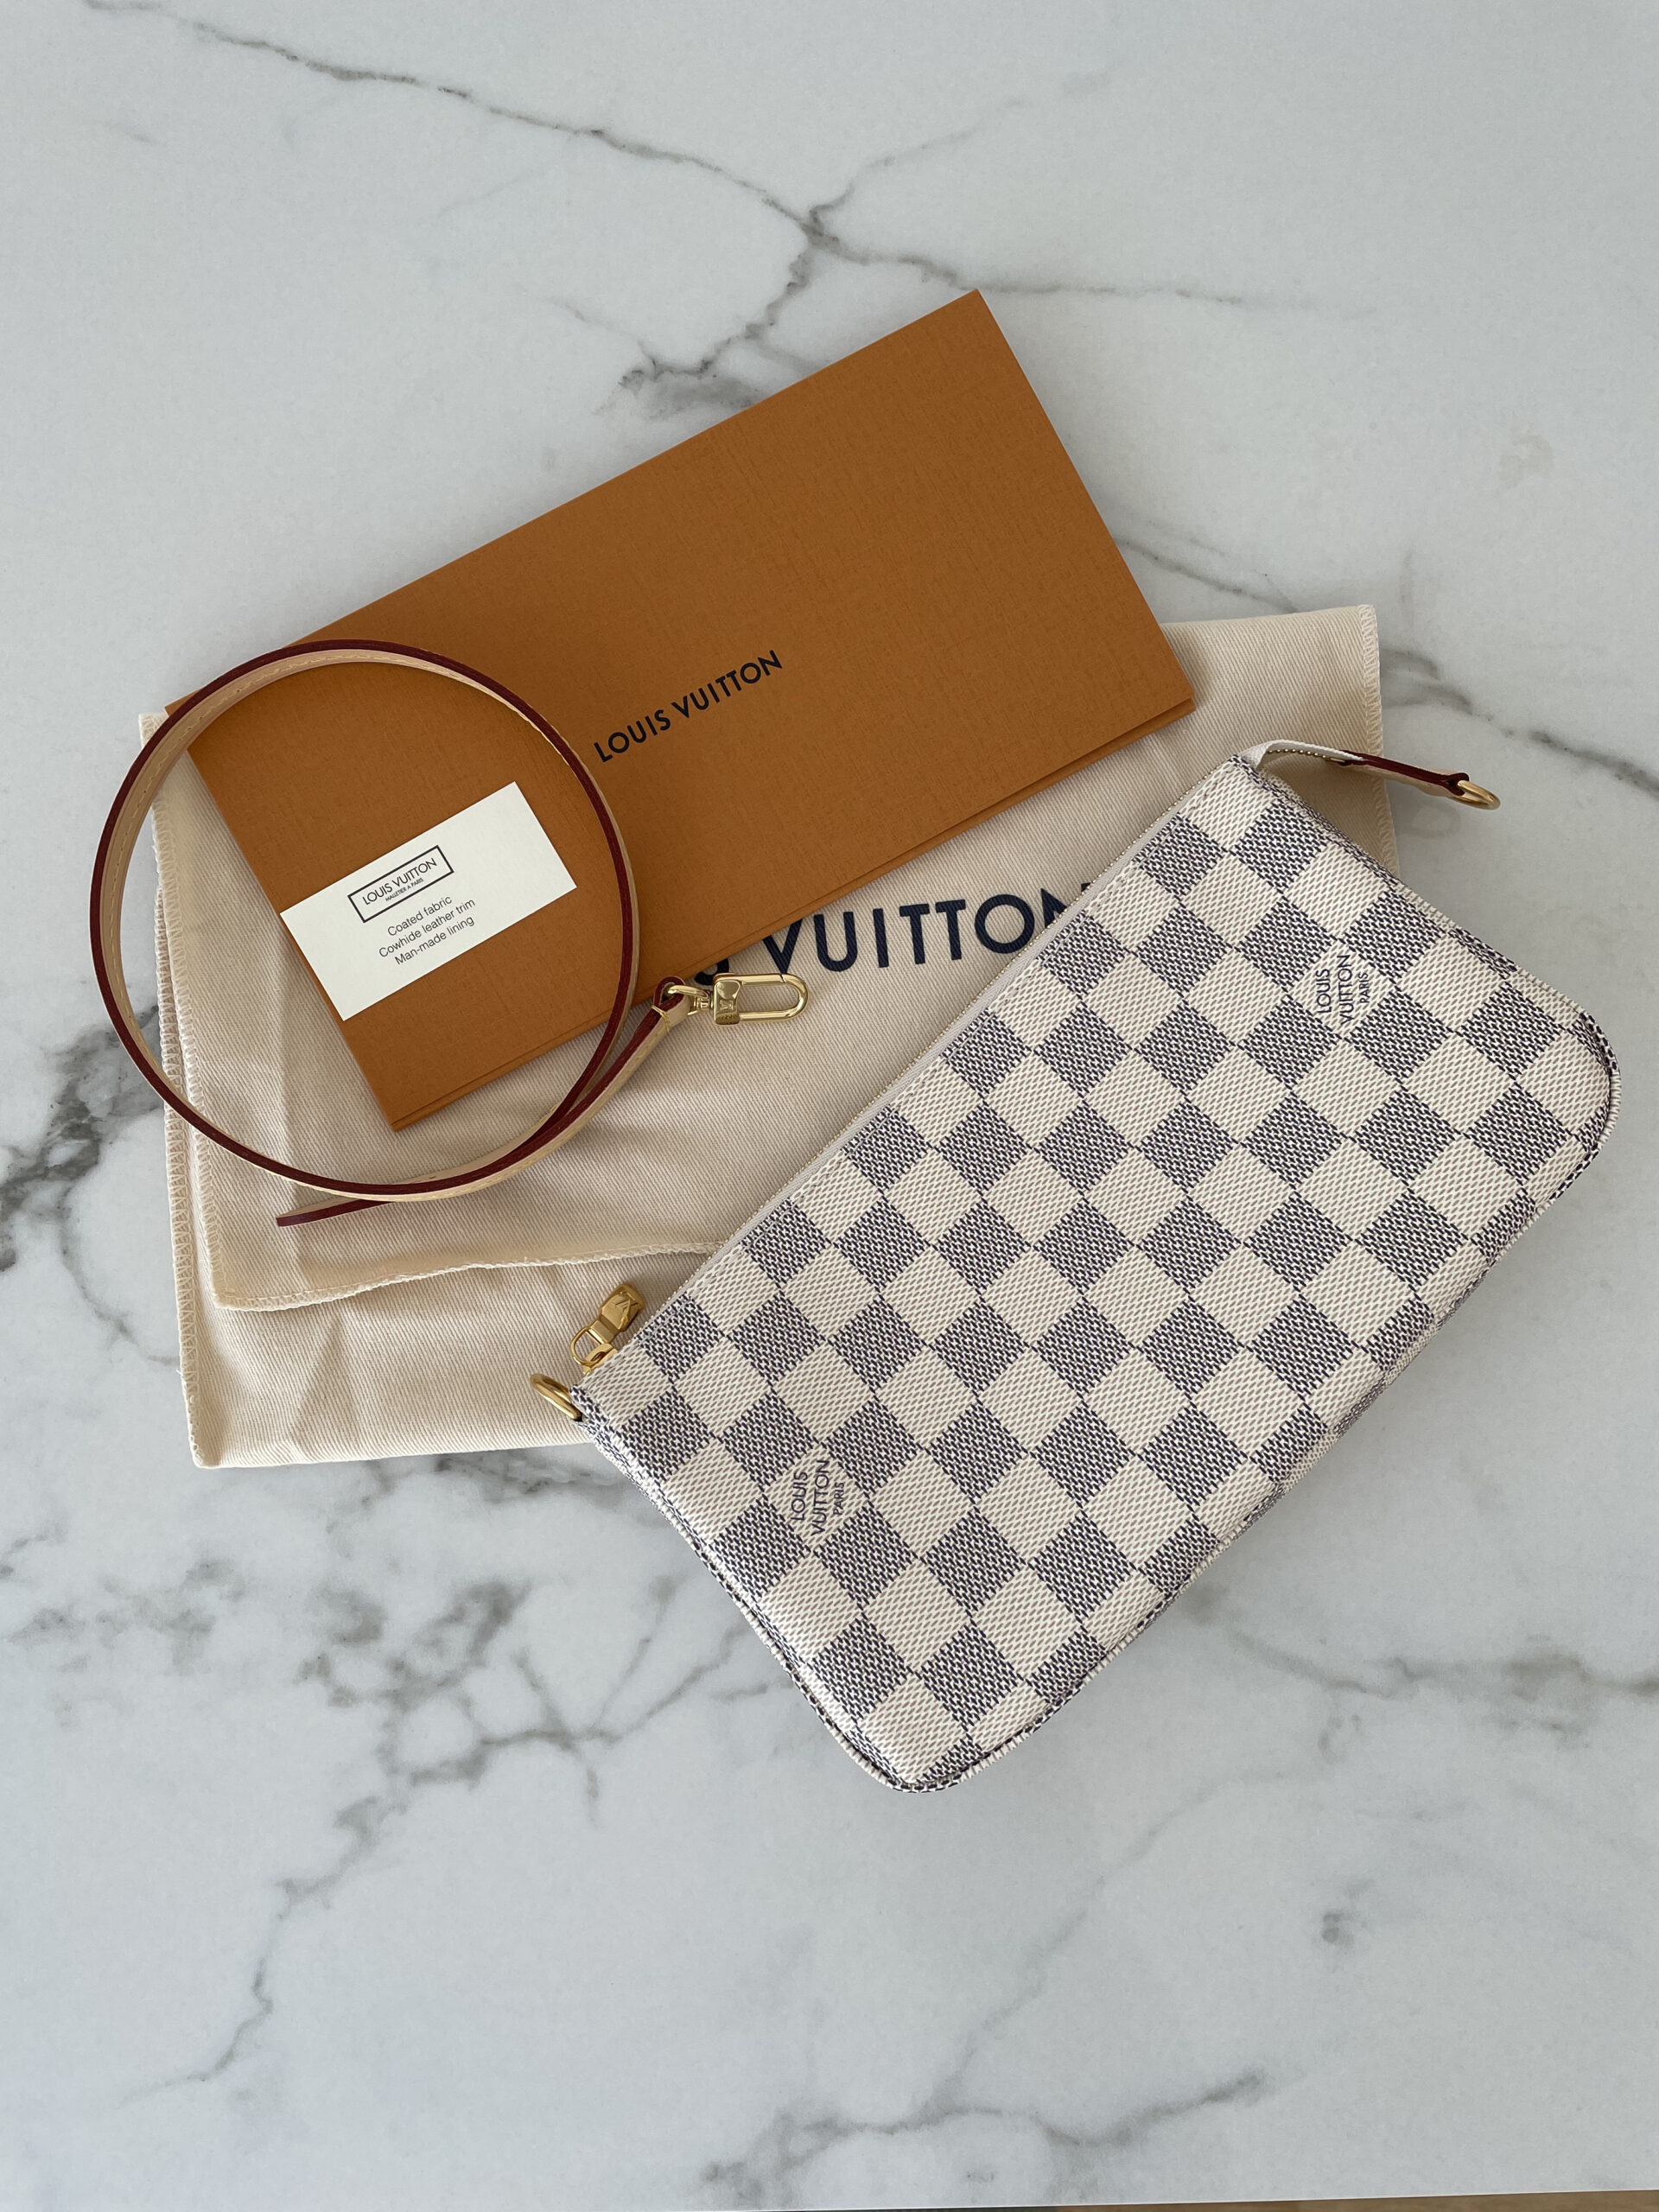 Authentique Louis Vuitton Pochette Felicie pour Femme Sac a Main